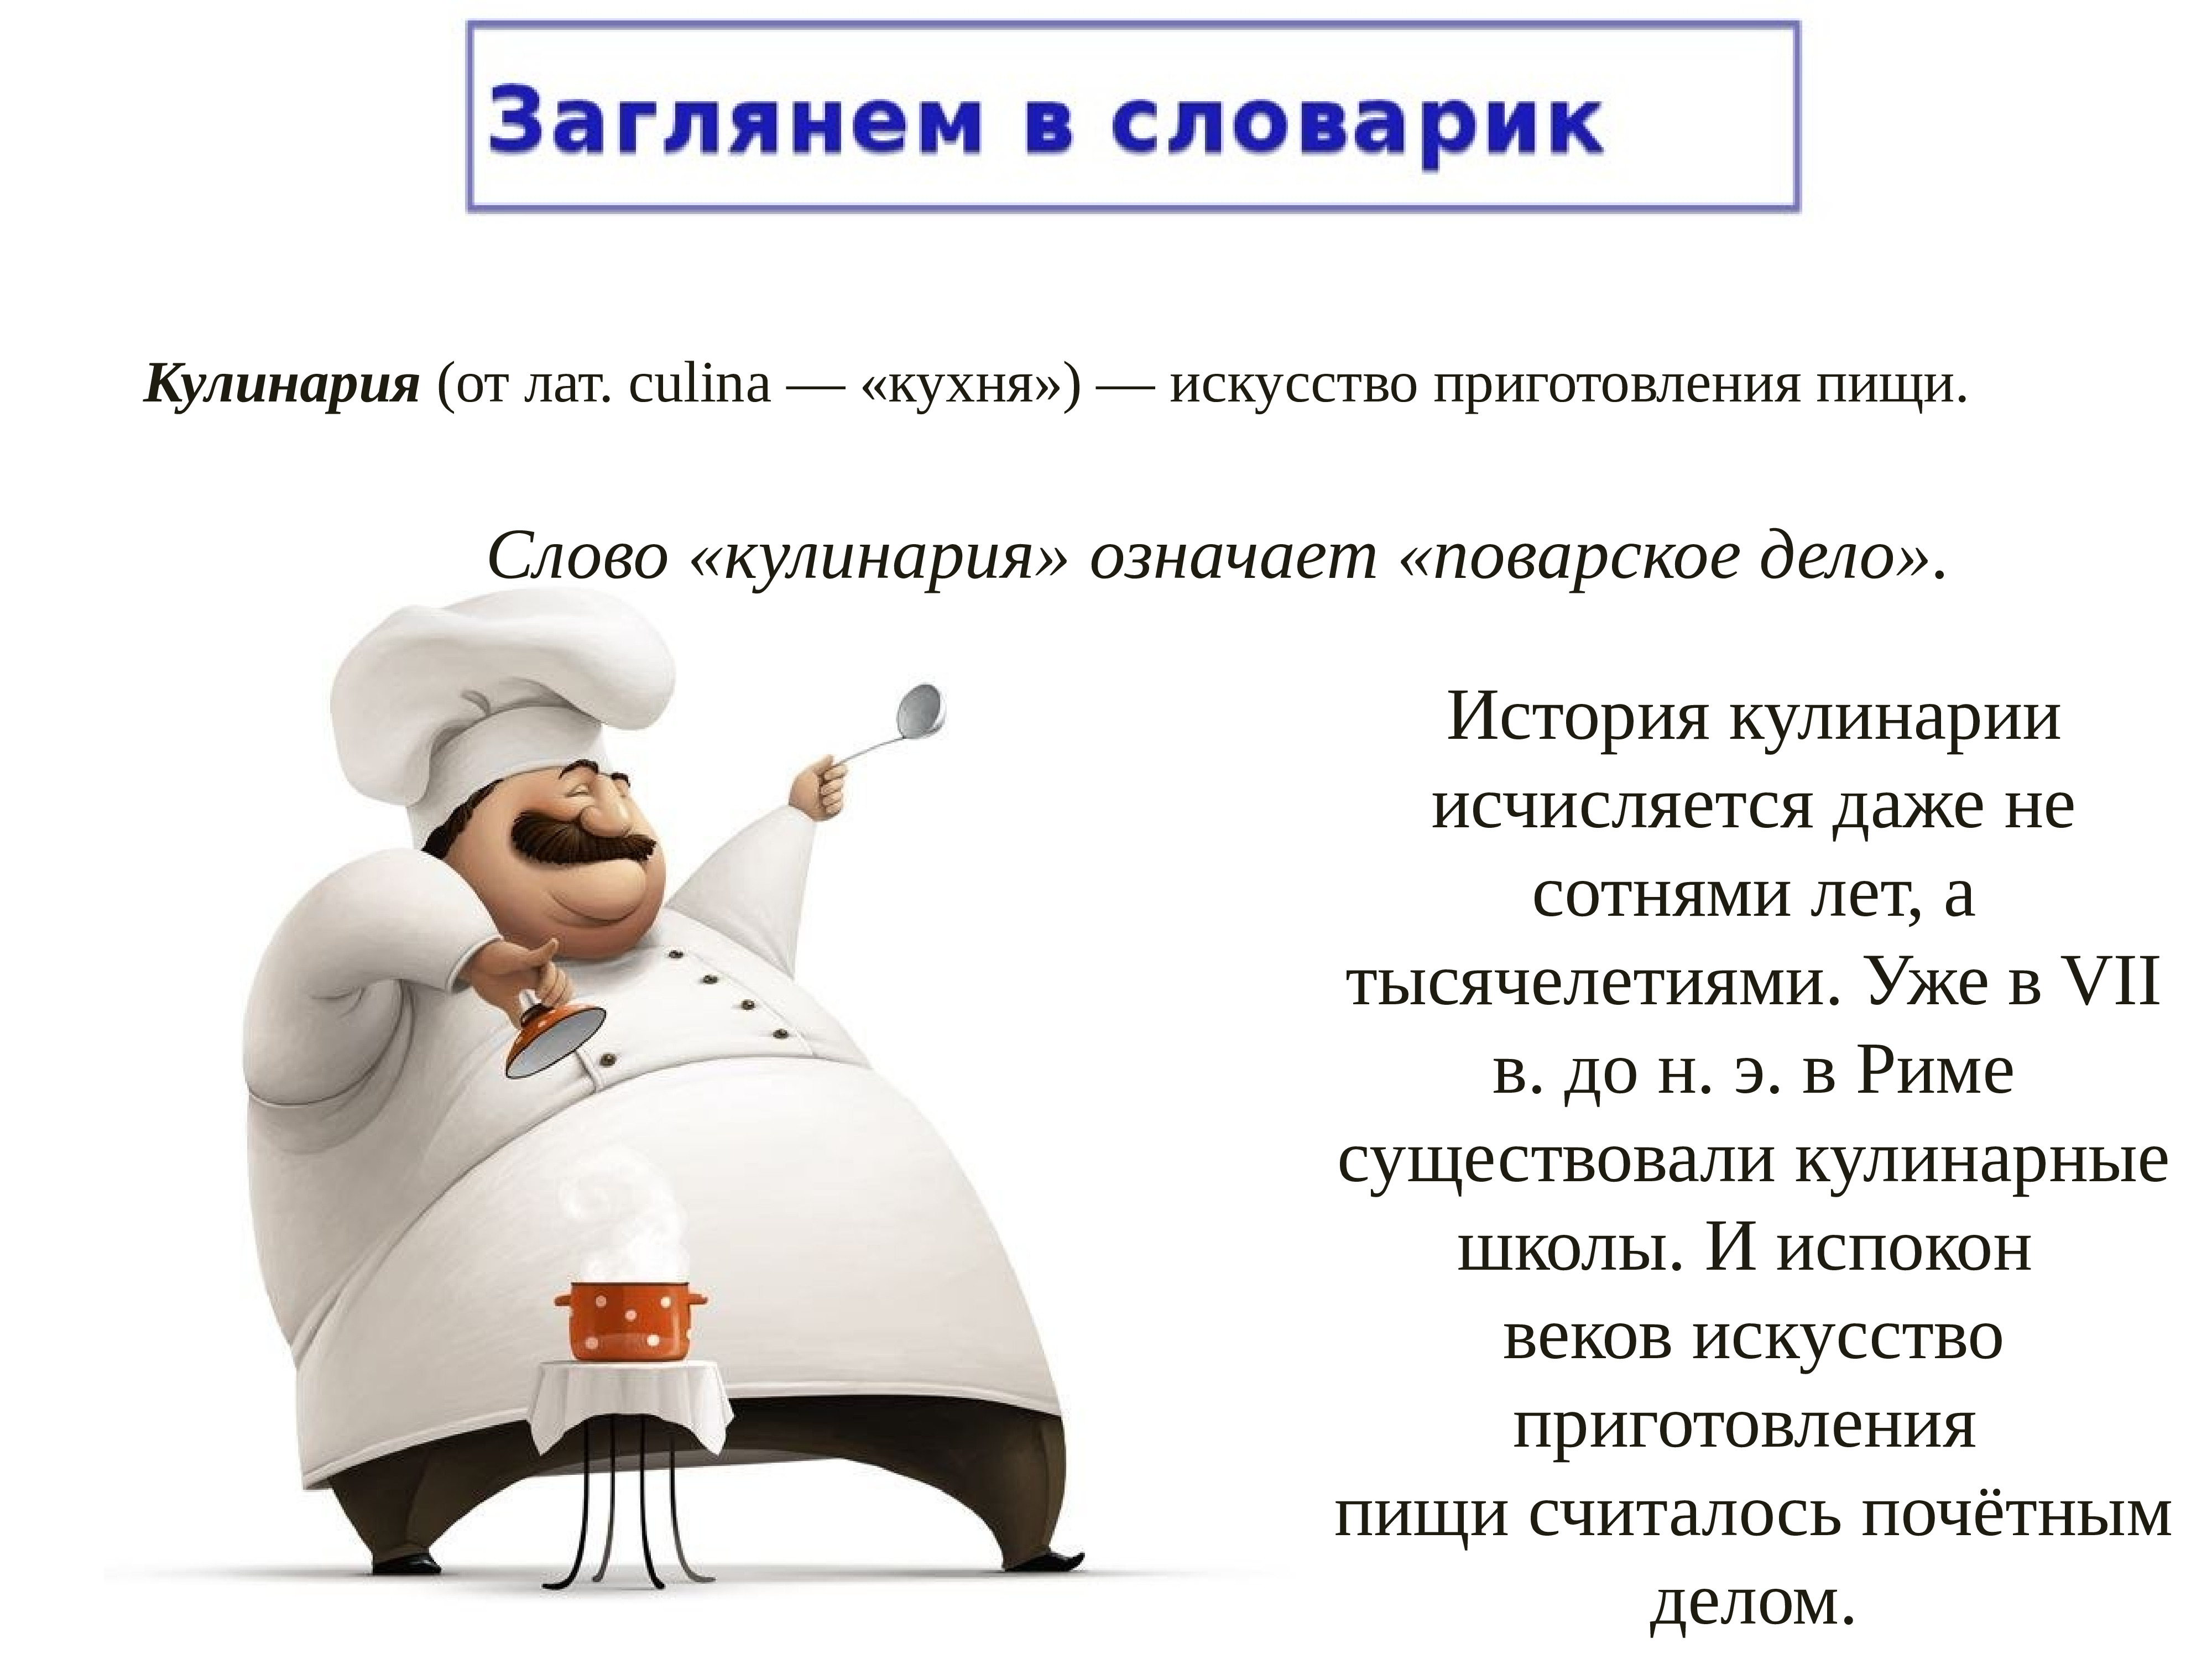 Что означает кулинария. История кулинарии. Презентация на тему кулинария. Доклад на тему кулинария. Факты о кулинарии.